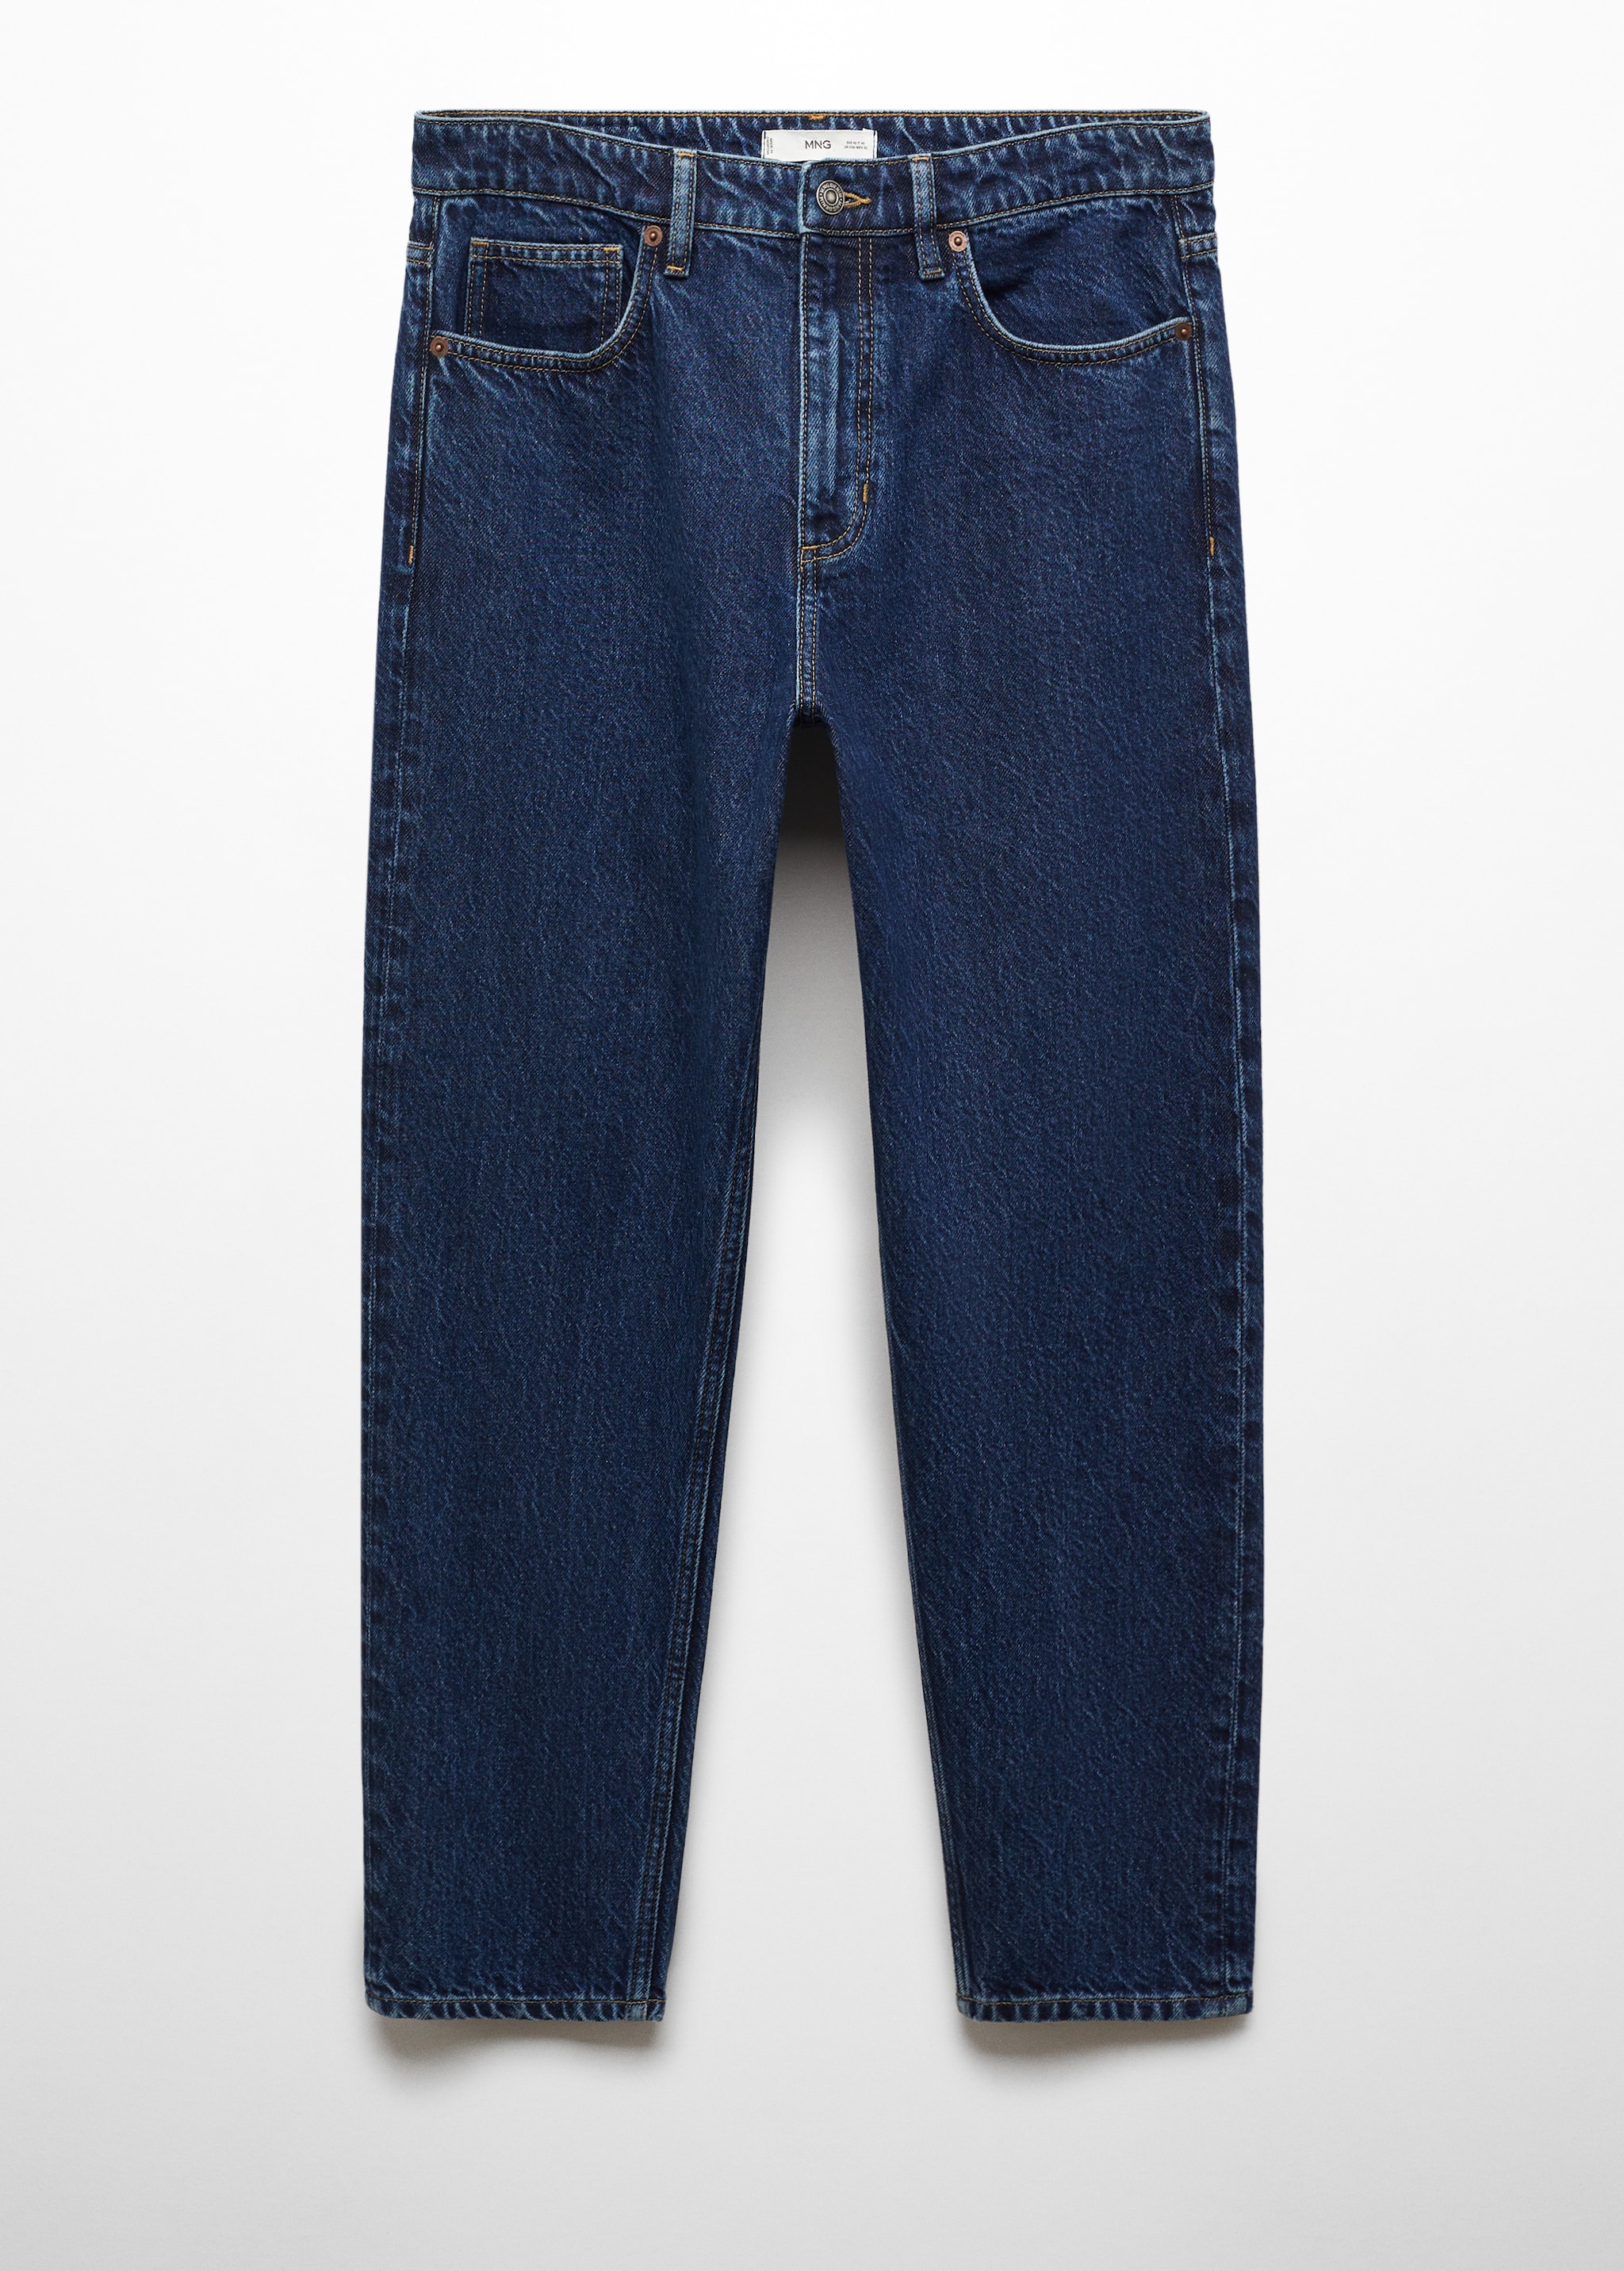 Jeans Sam tapered-fit  - Articolo senza modello